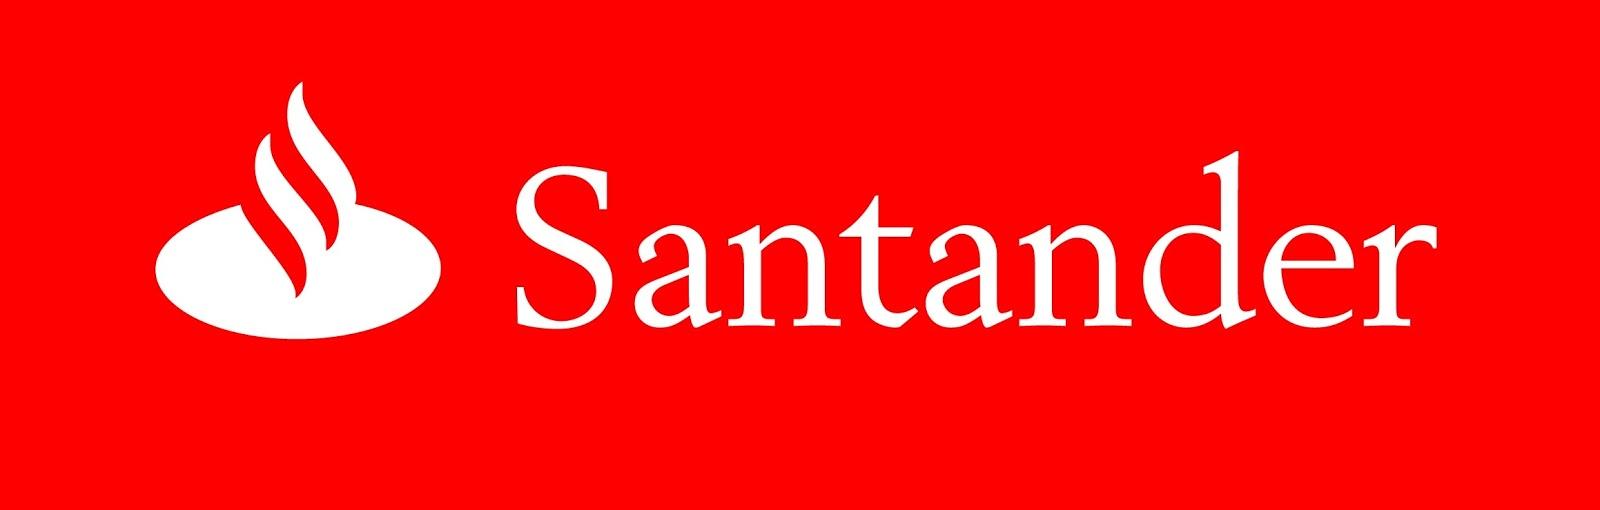 Fusión Banco Santander-Banesto, sobran 3000 empleados